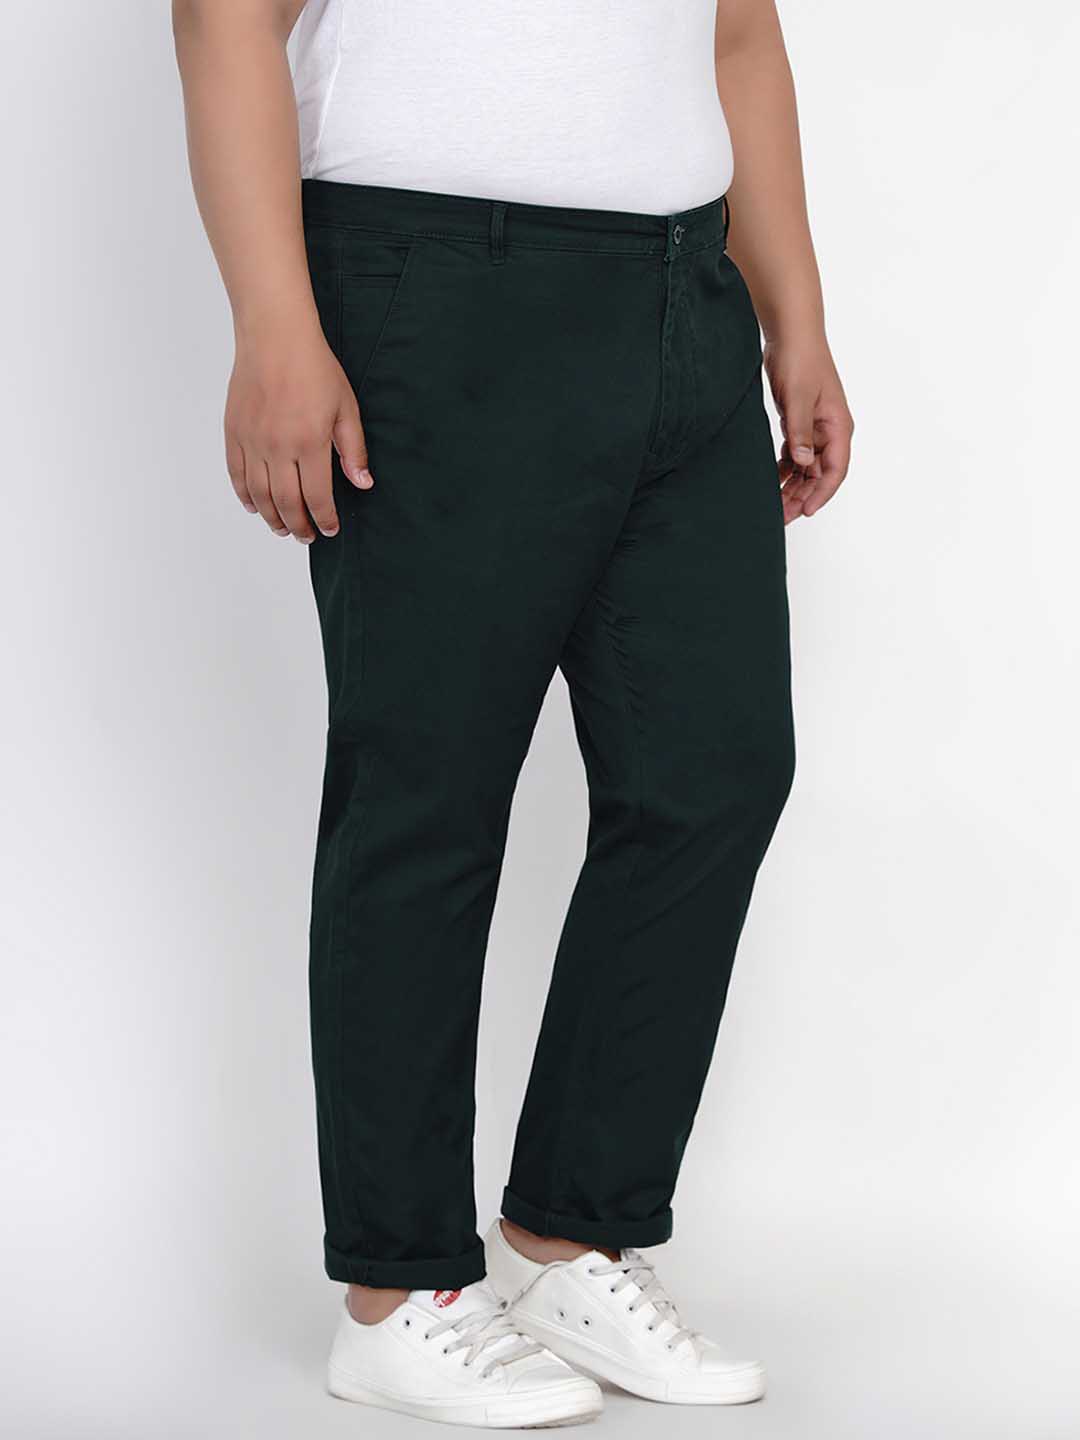 bottomwear/trousers/JPTR2195L/jptr2195l-5.jpg